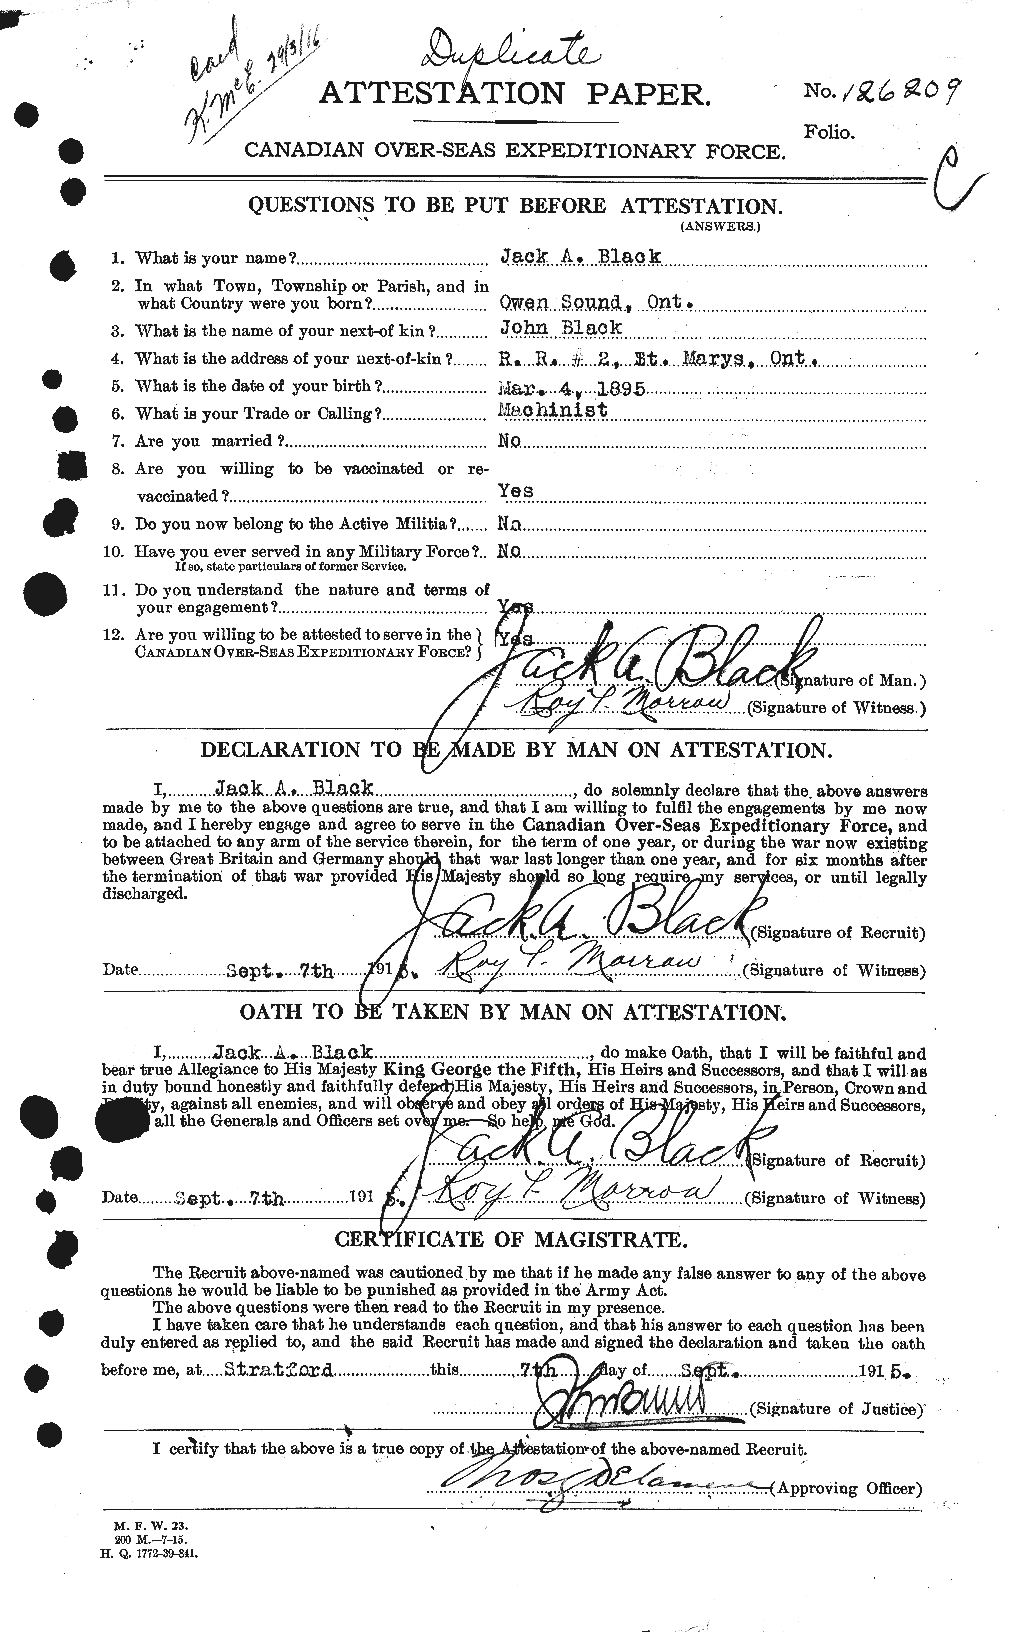 Dossiers du Personnel de la Première Guerre mondiale - CEC 246818a